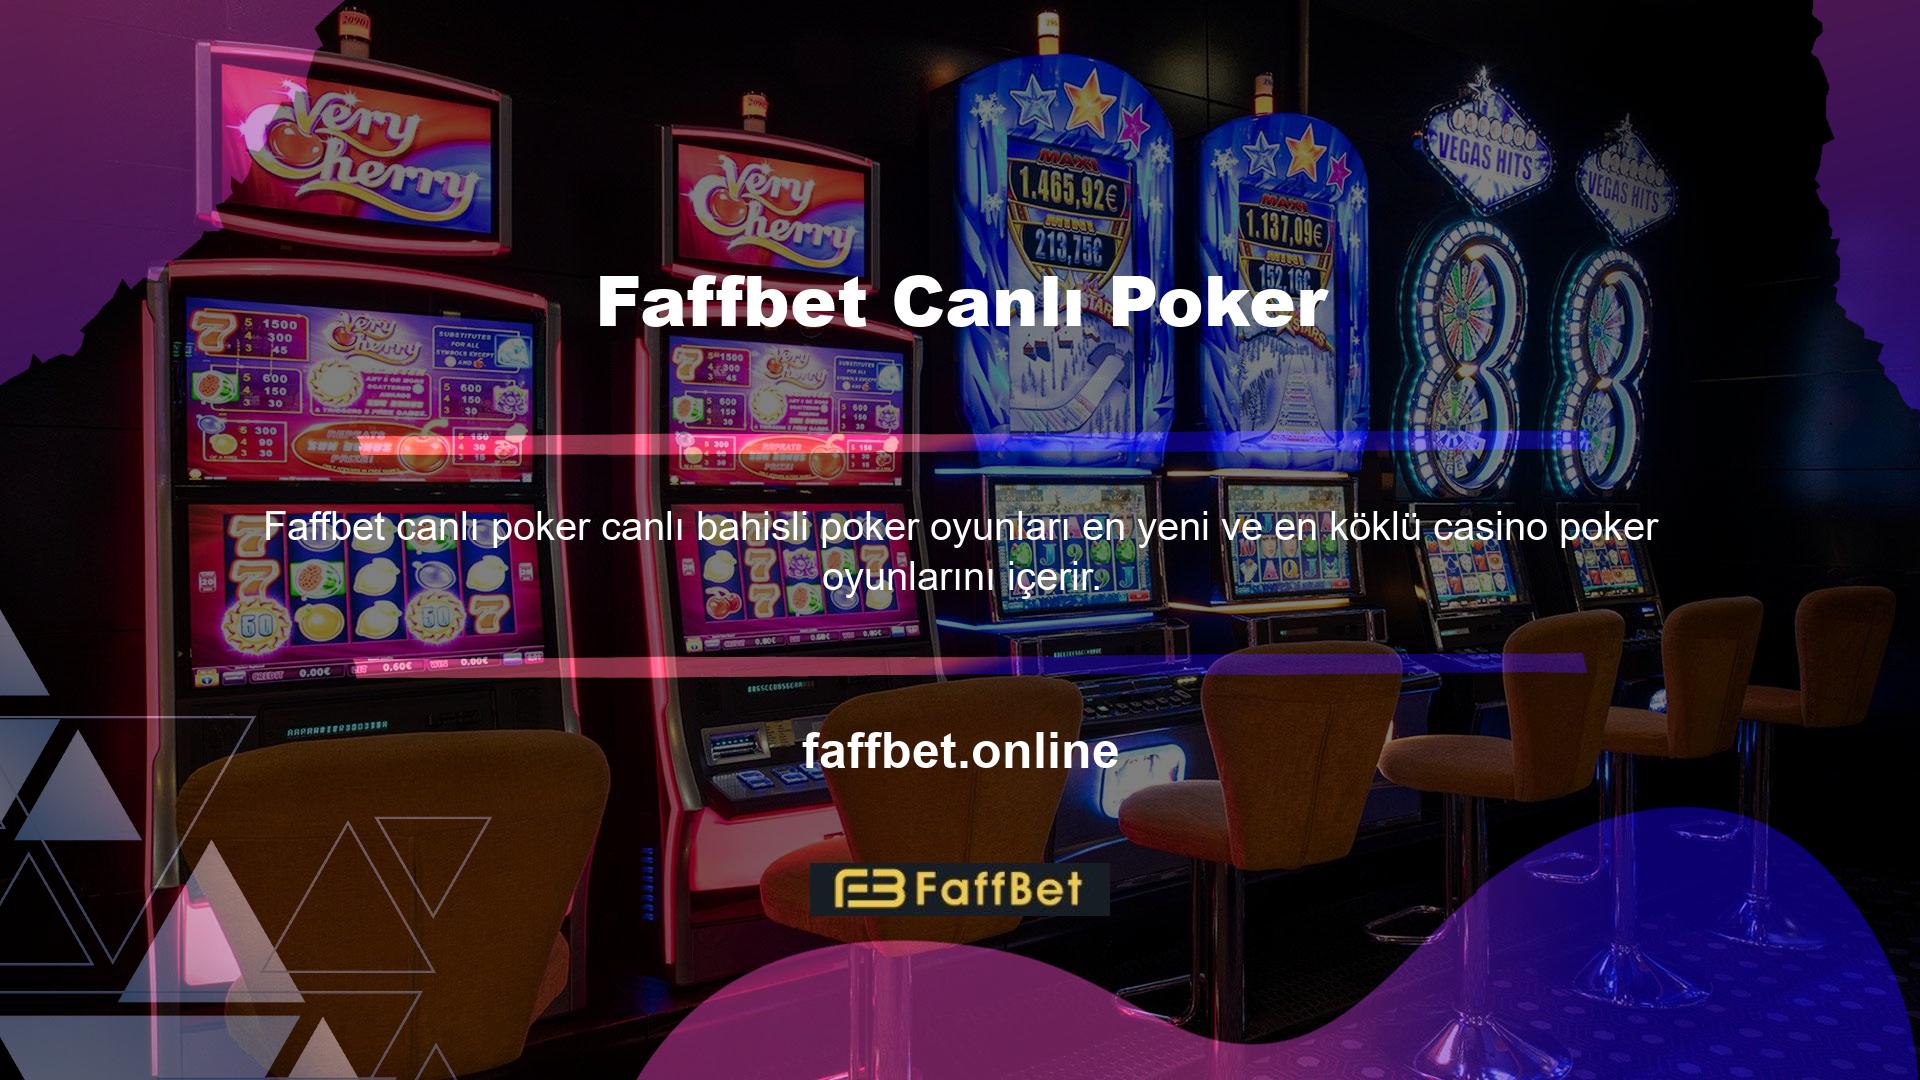 Faffbet Canlı Poker geniş bir oyun yelpazesi sunuyor